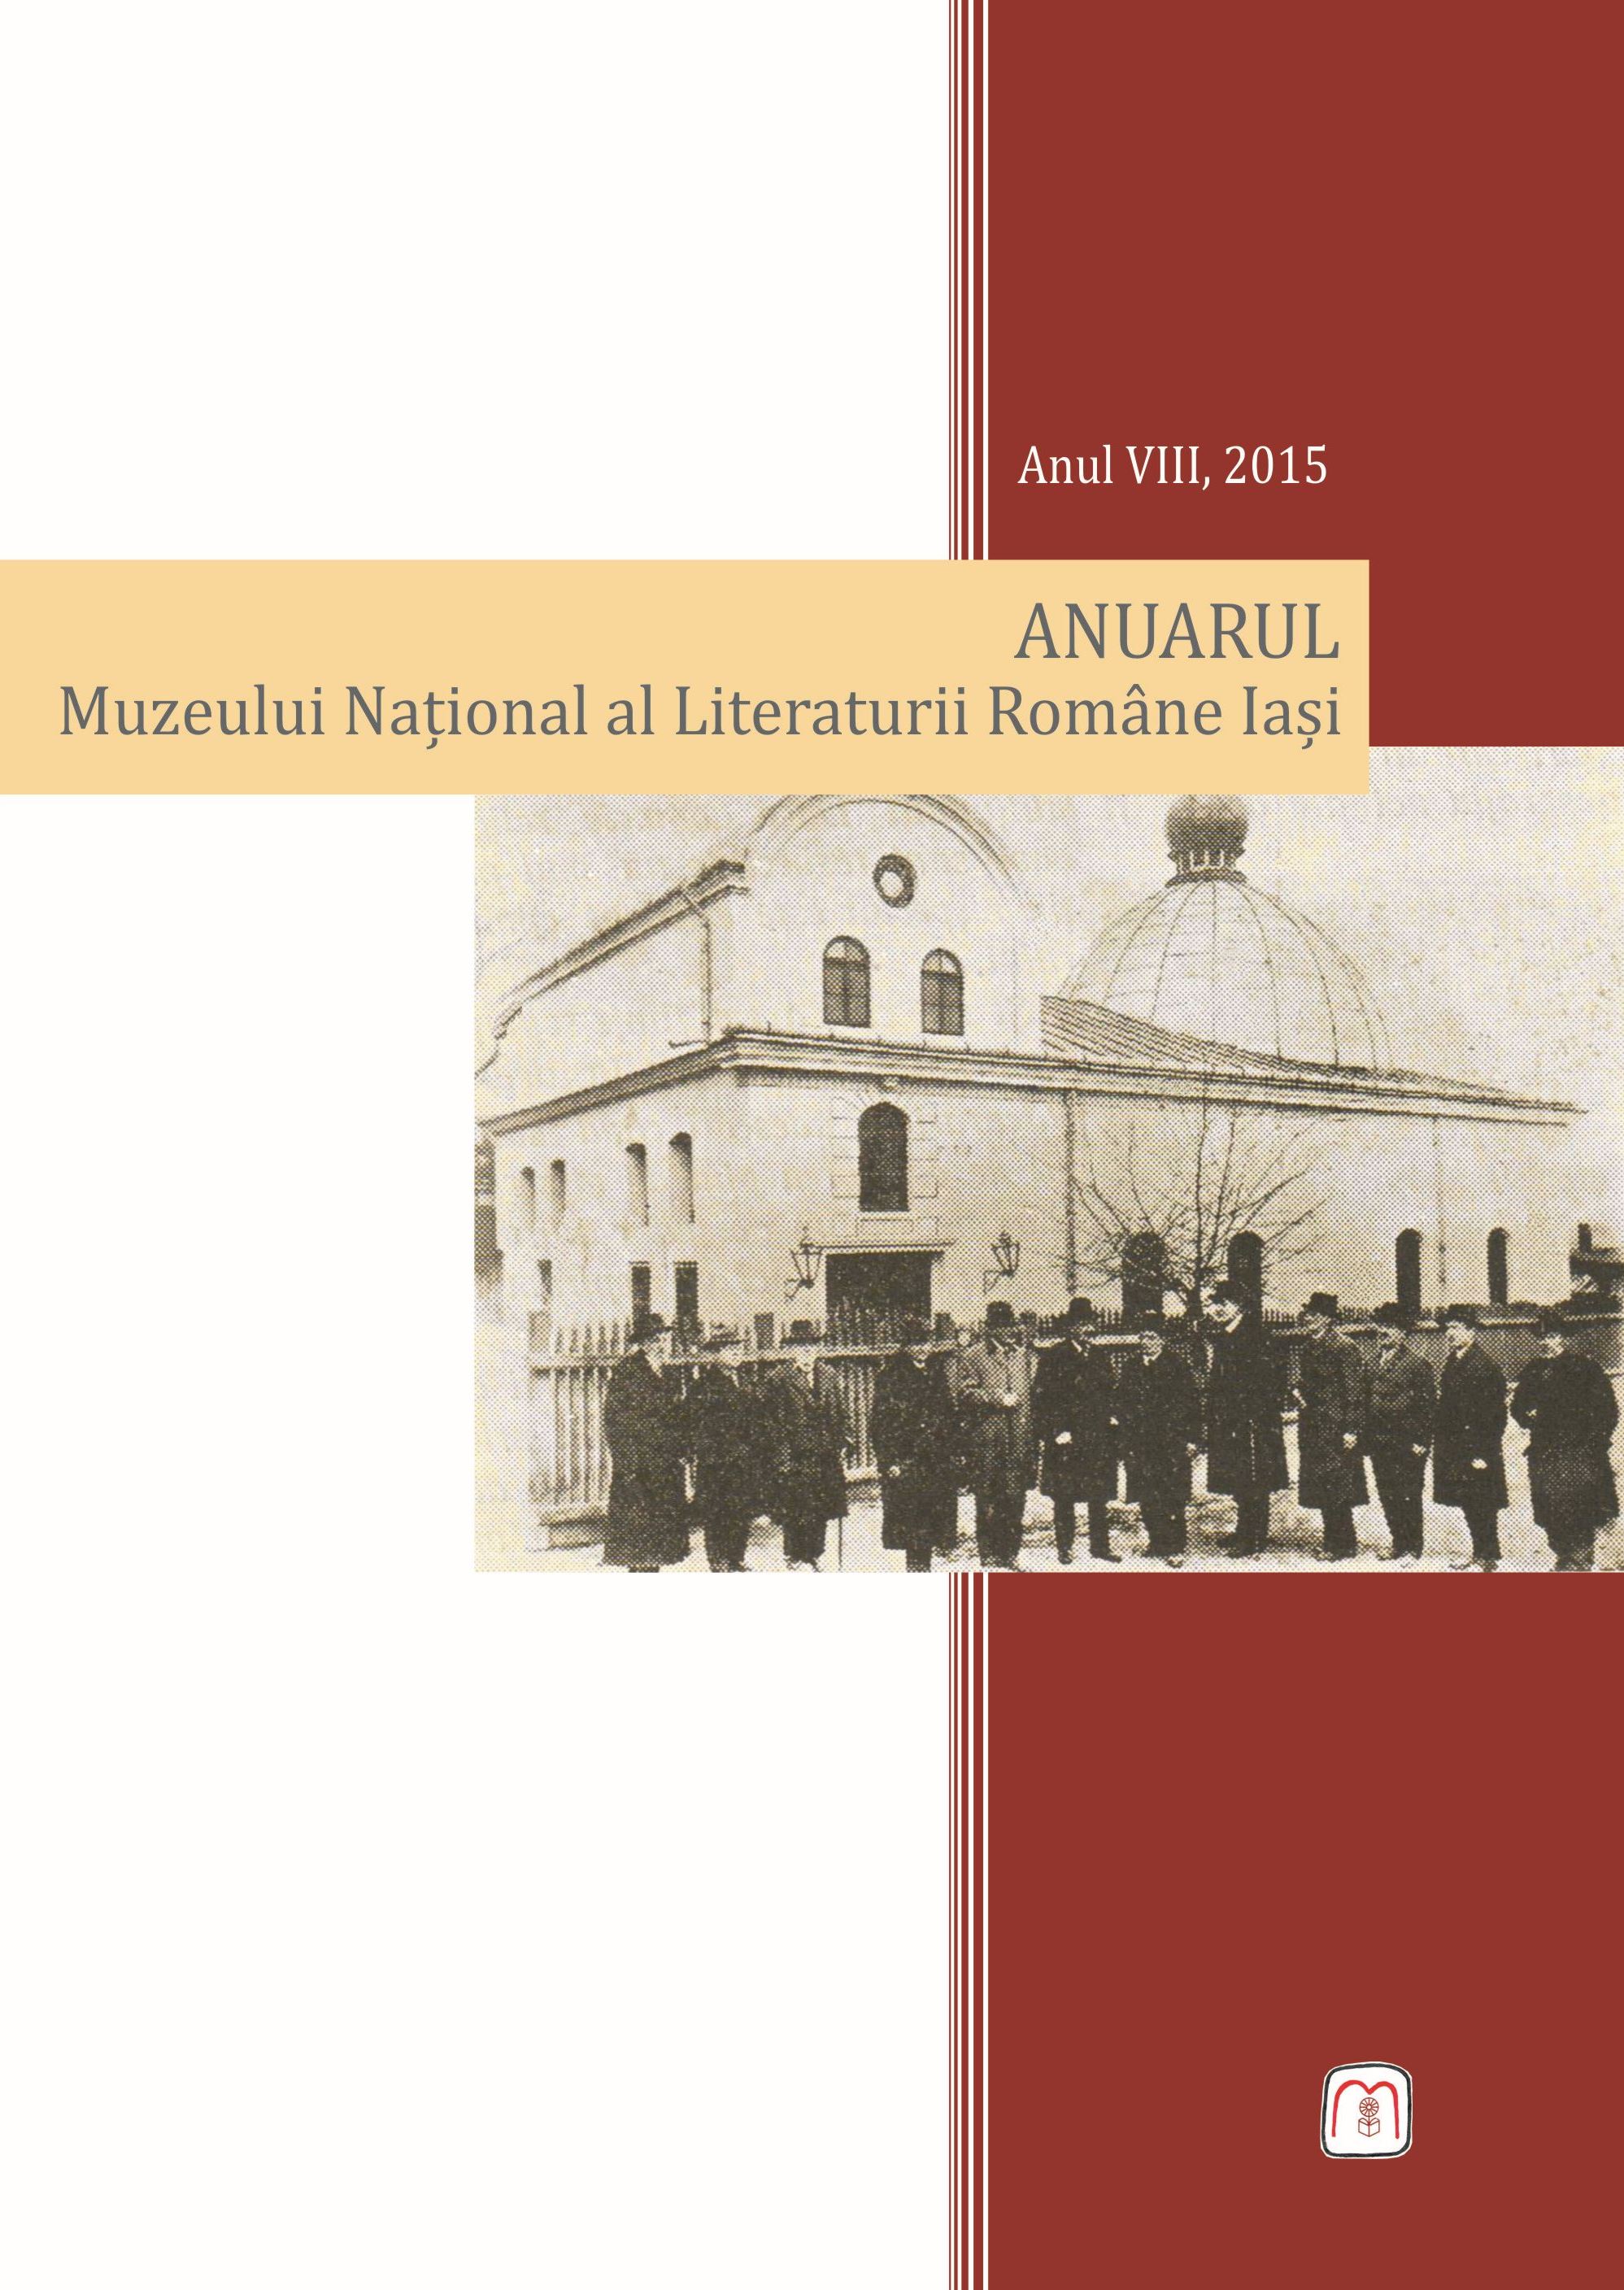 Corespondenţă inedită şi cărţi cu dedicații 
ale lui N. Iorga în colecţiile Bibliotecii Centrale Universitare  „Mihai Eminescu” din Iaşi